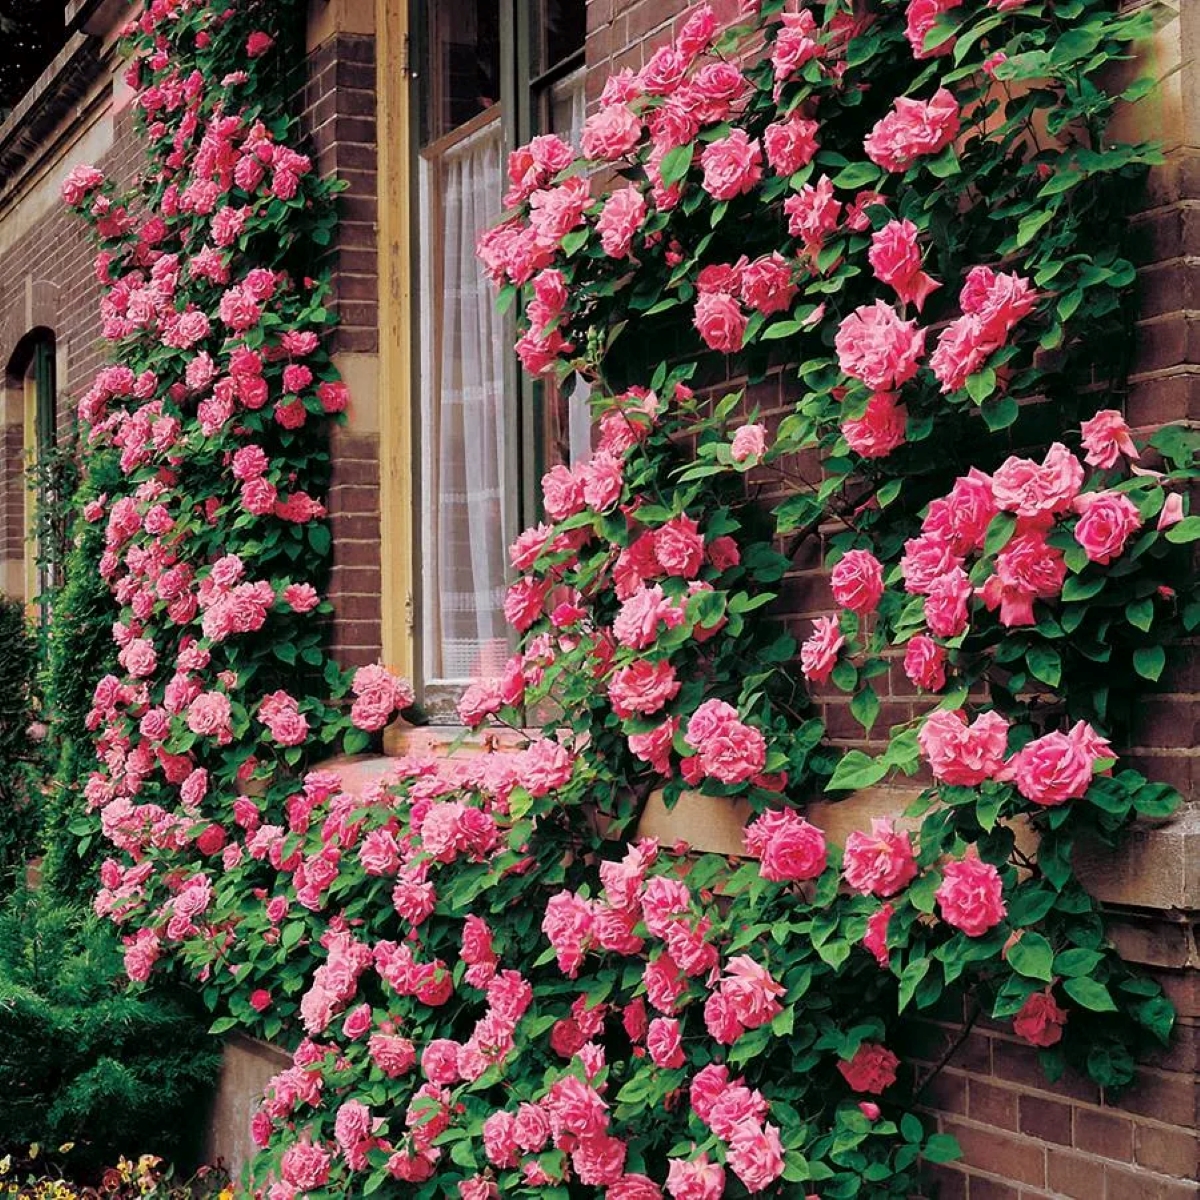 Pink climbing roses on brick wall